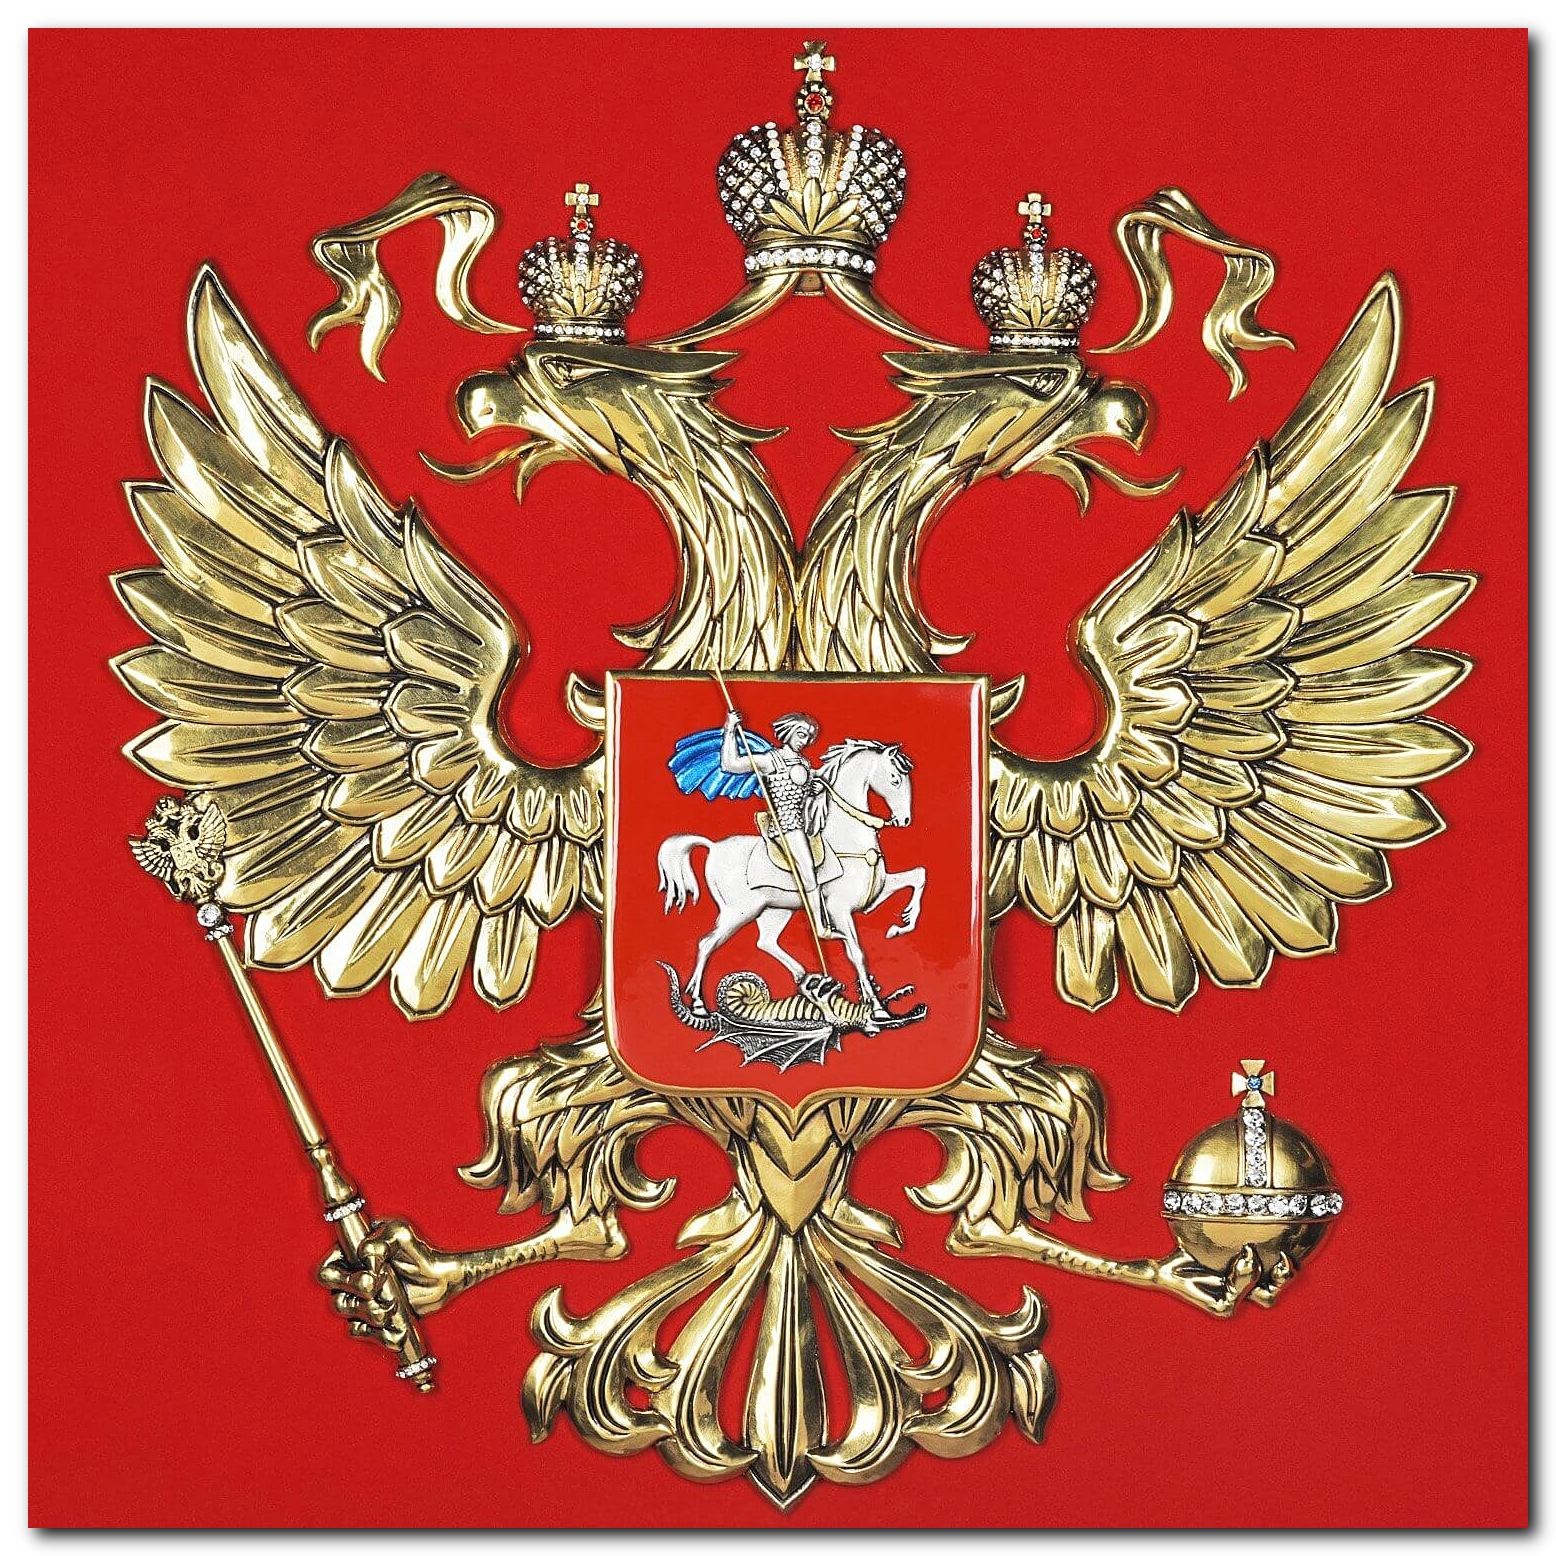 30 ноября 2023 года исполняется 30 лет со дня утверждения Государственного герба Российской Федерации.